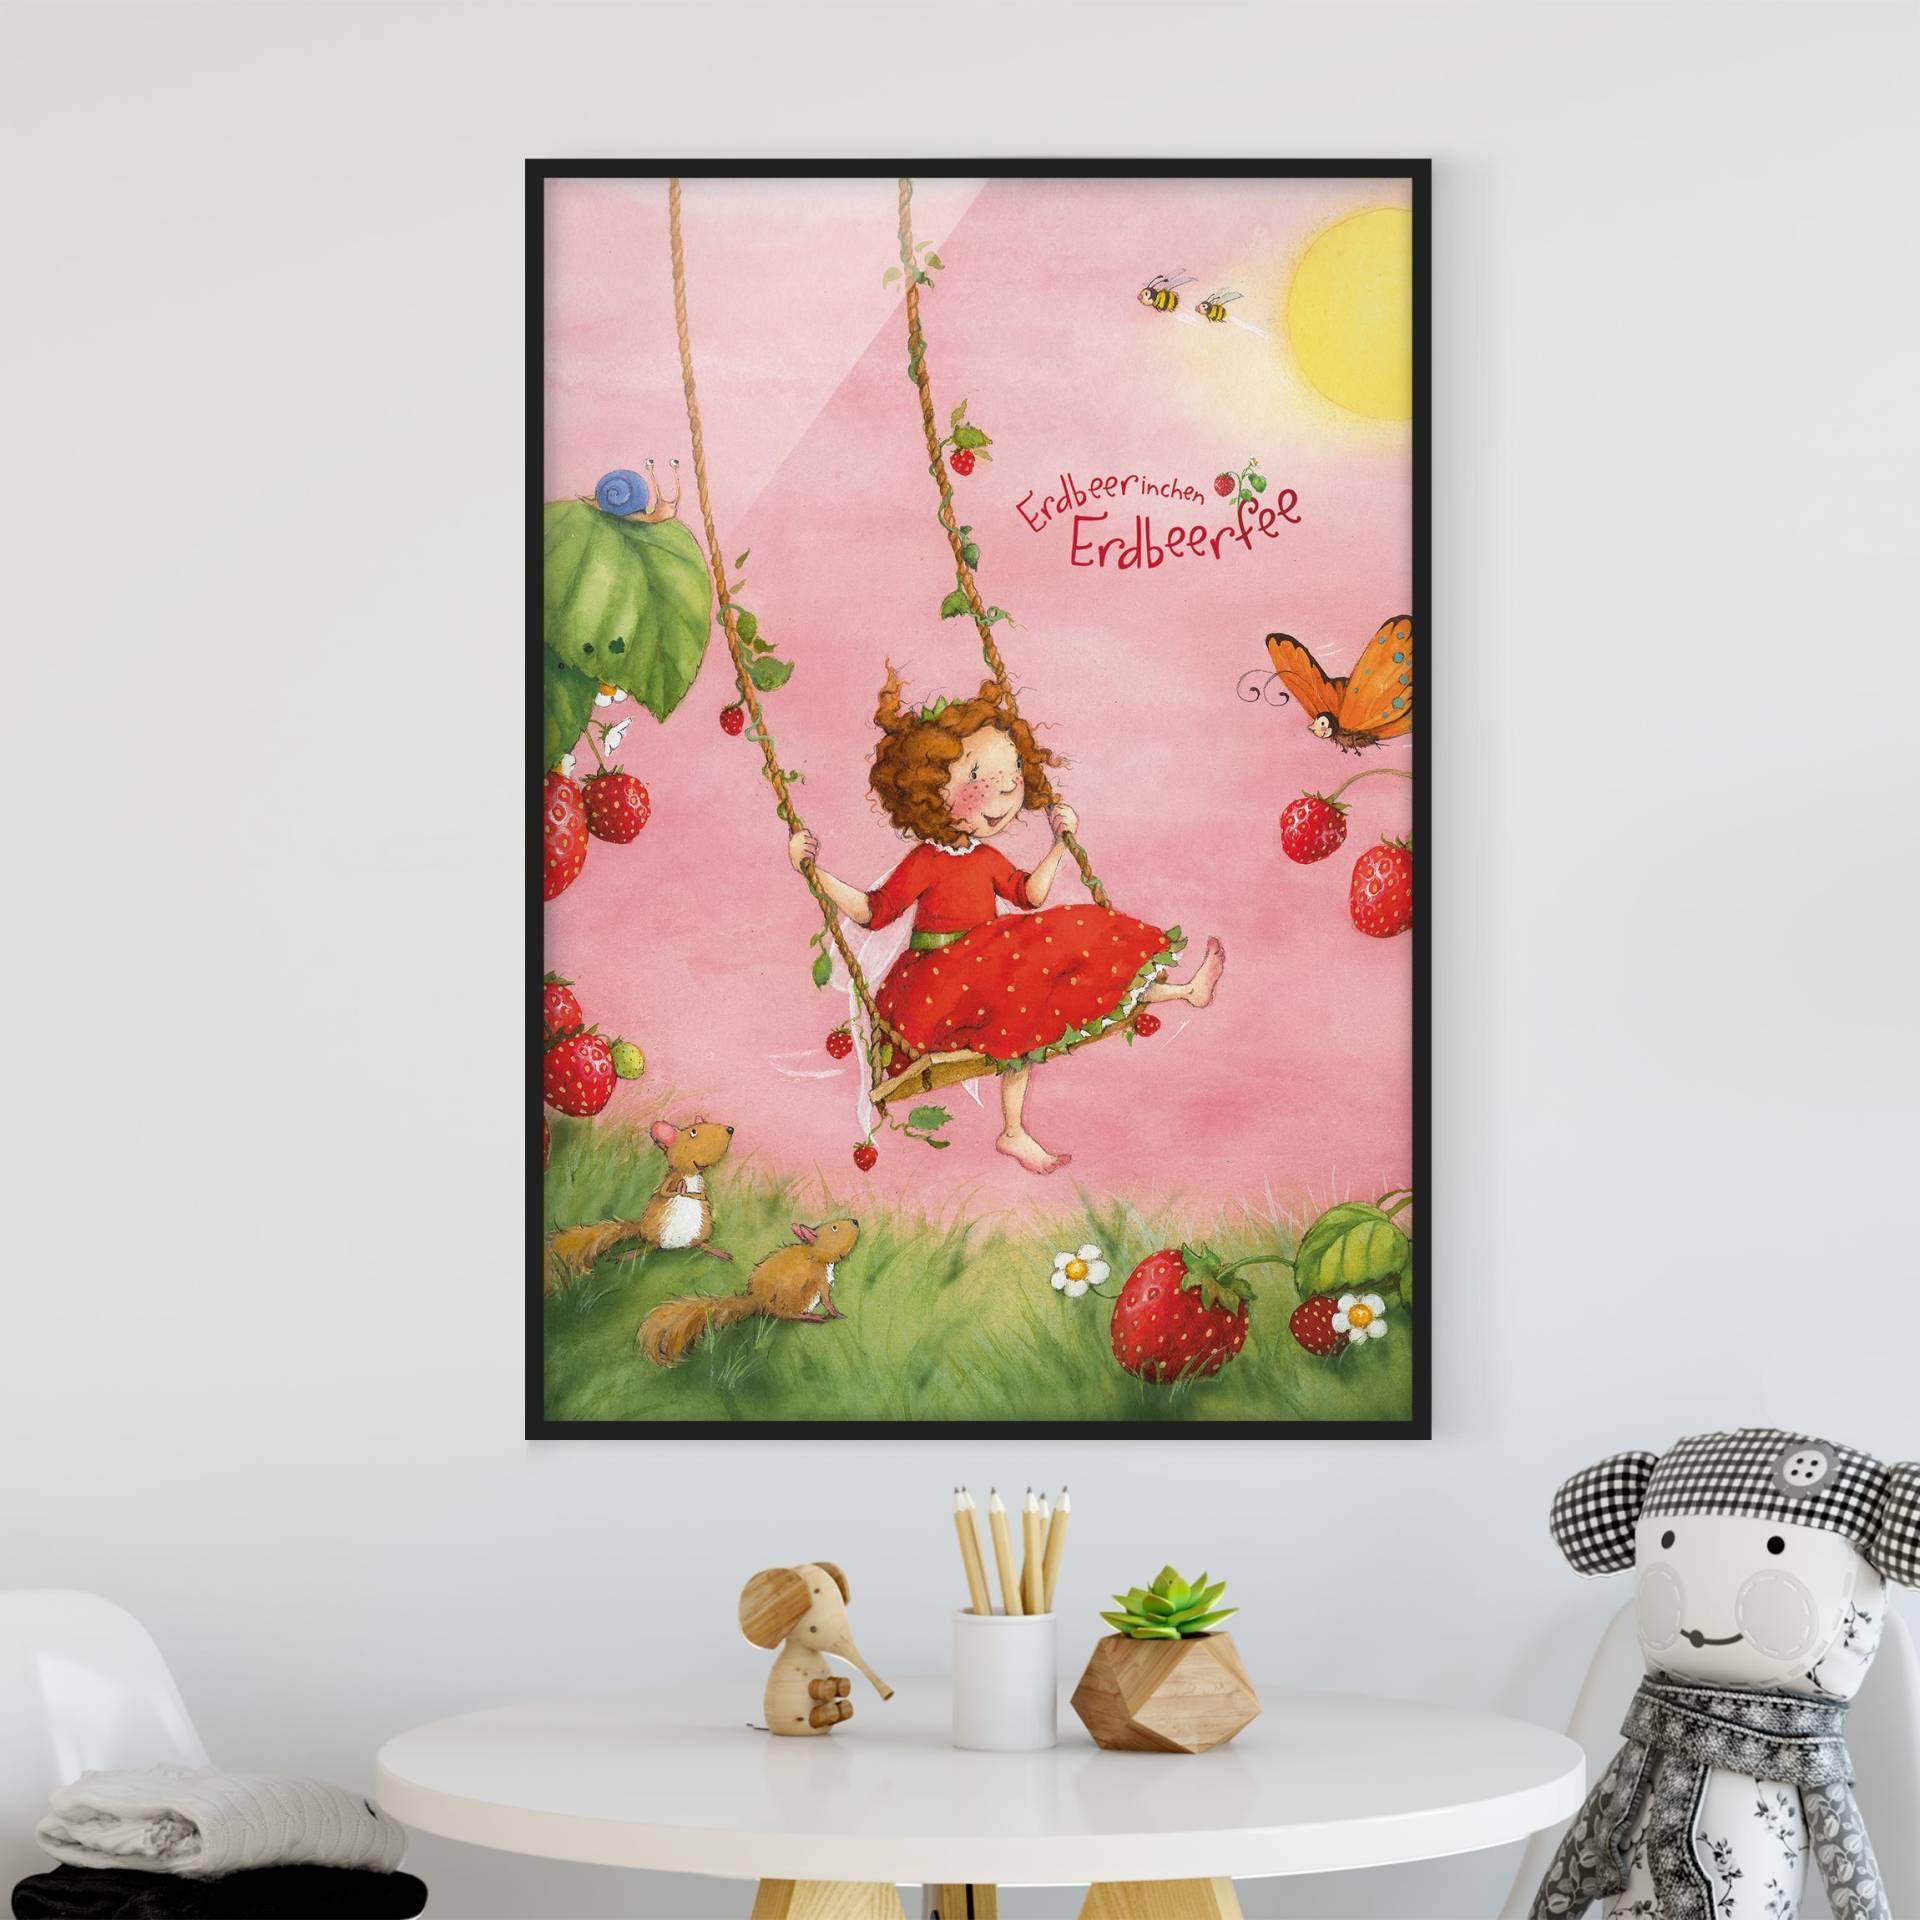 Kinderzimmer Bild mit Rahmen Erdbeerinchen Erdbeerfee - Baumschaukel von Klebefieber